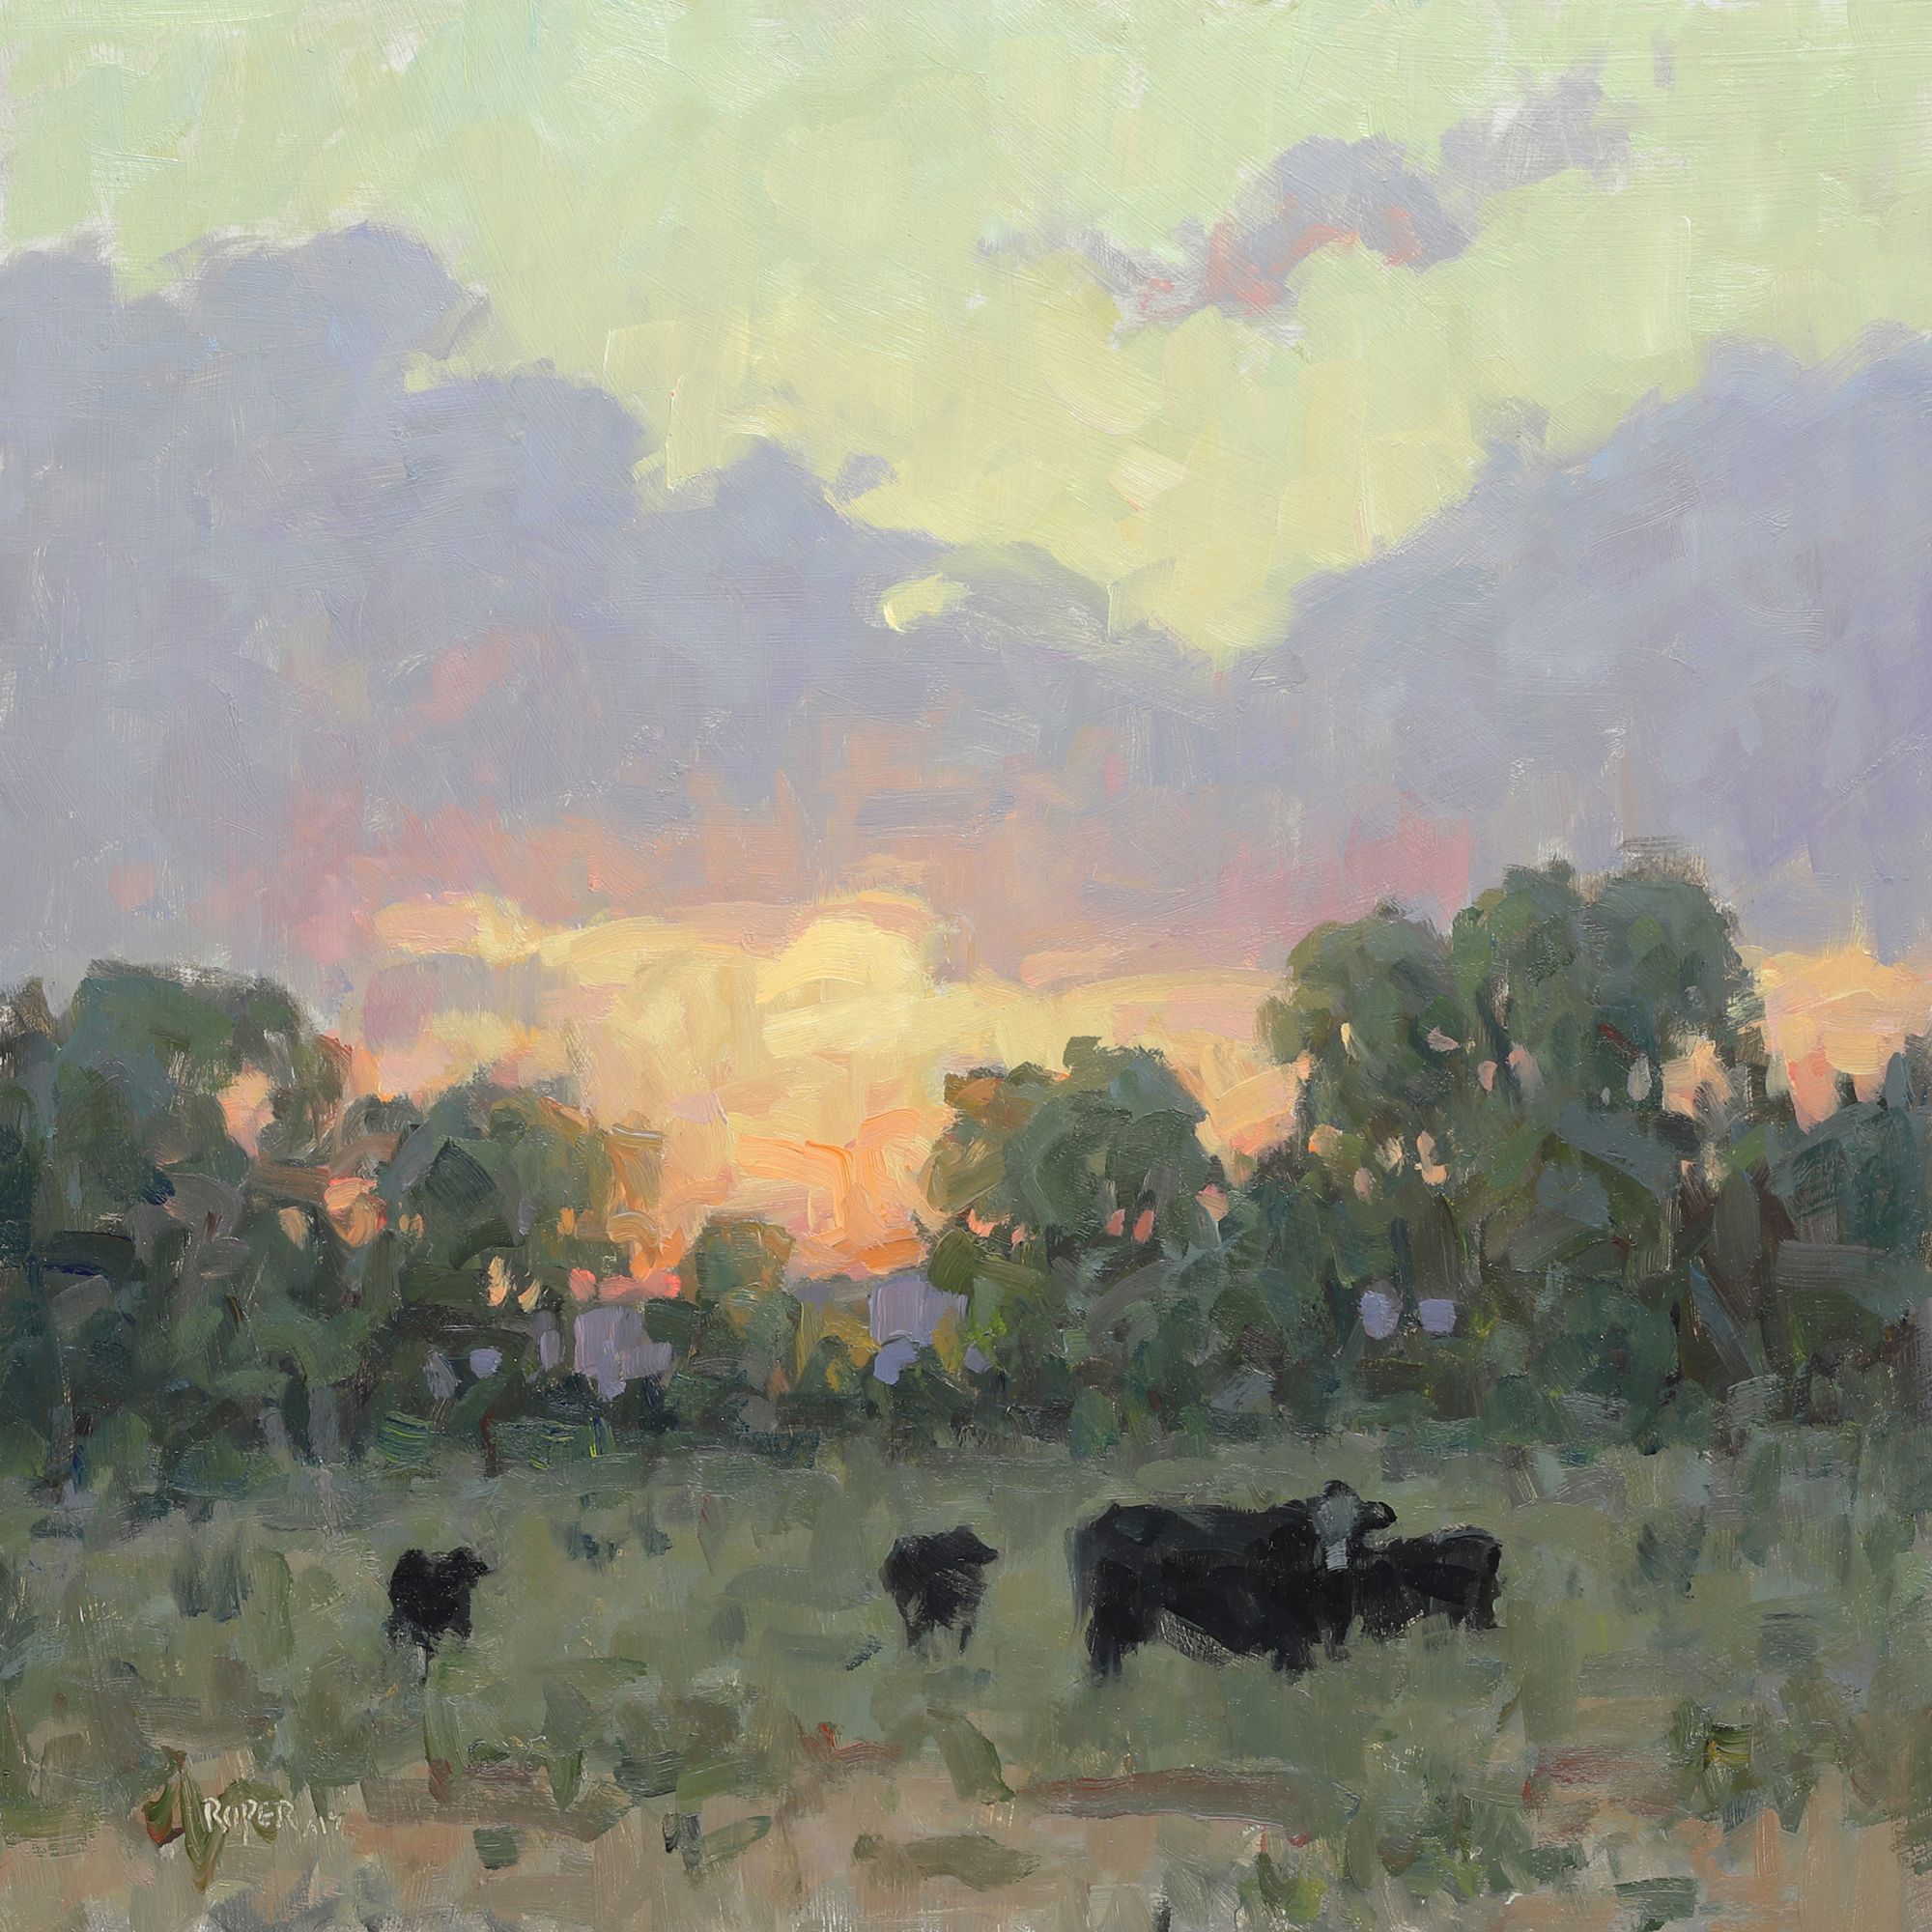 Stuart Roper AIS, Sunset Grazing, Oil on panel, 12 x 12